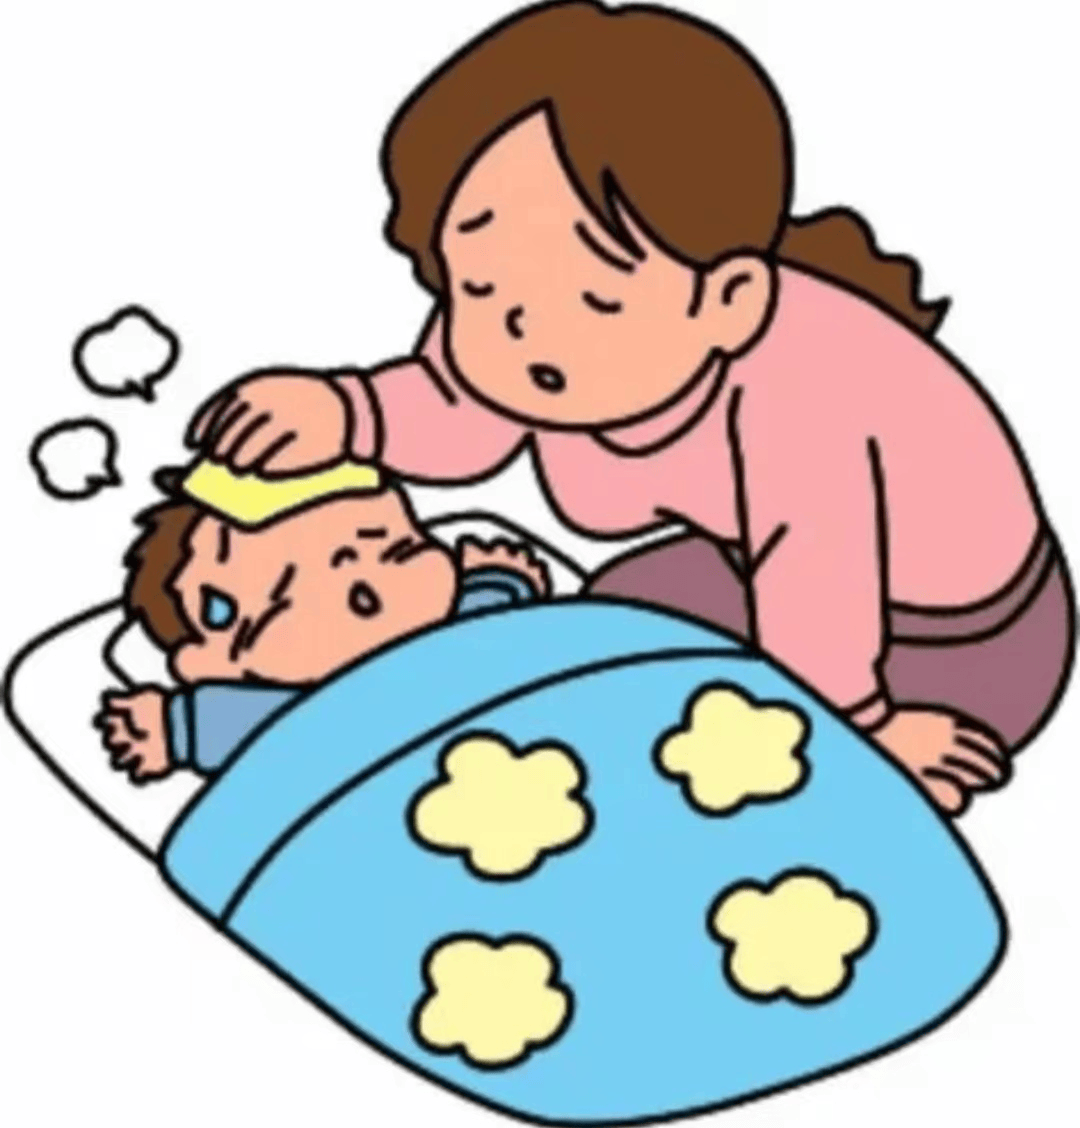 宝宝发烧图片卡通可爱图片